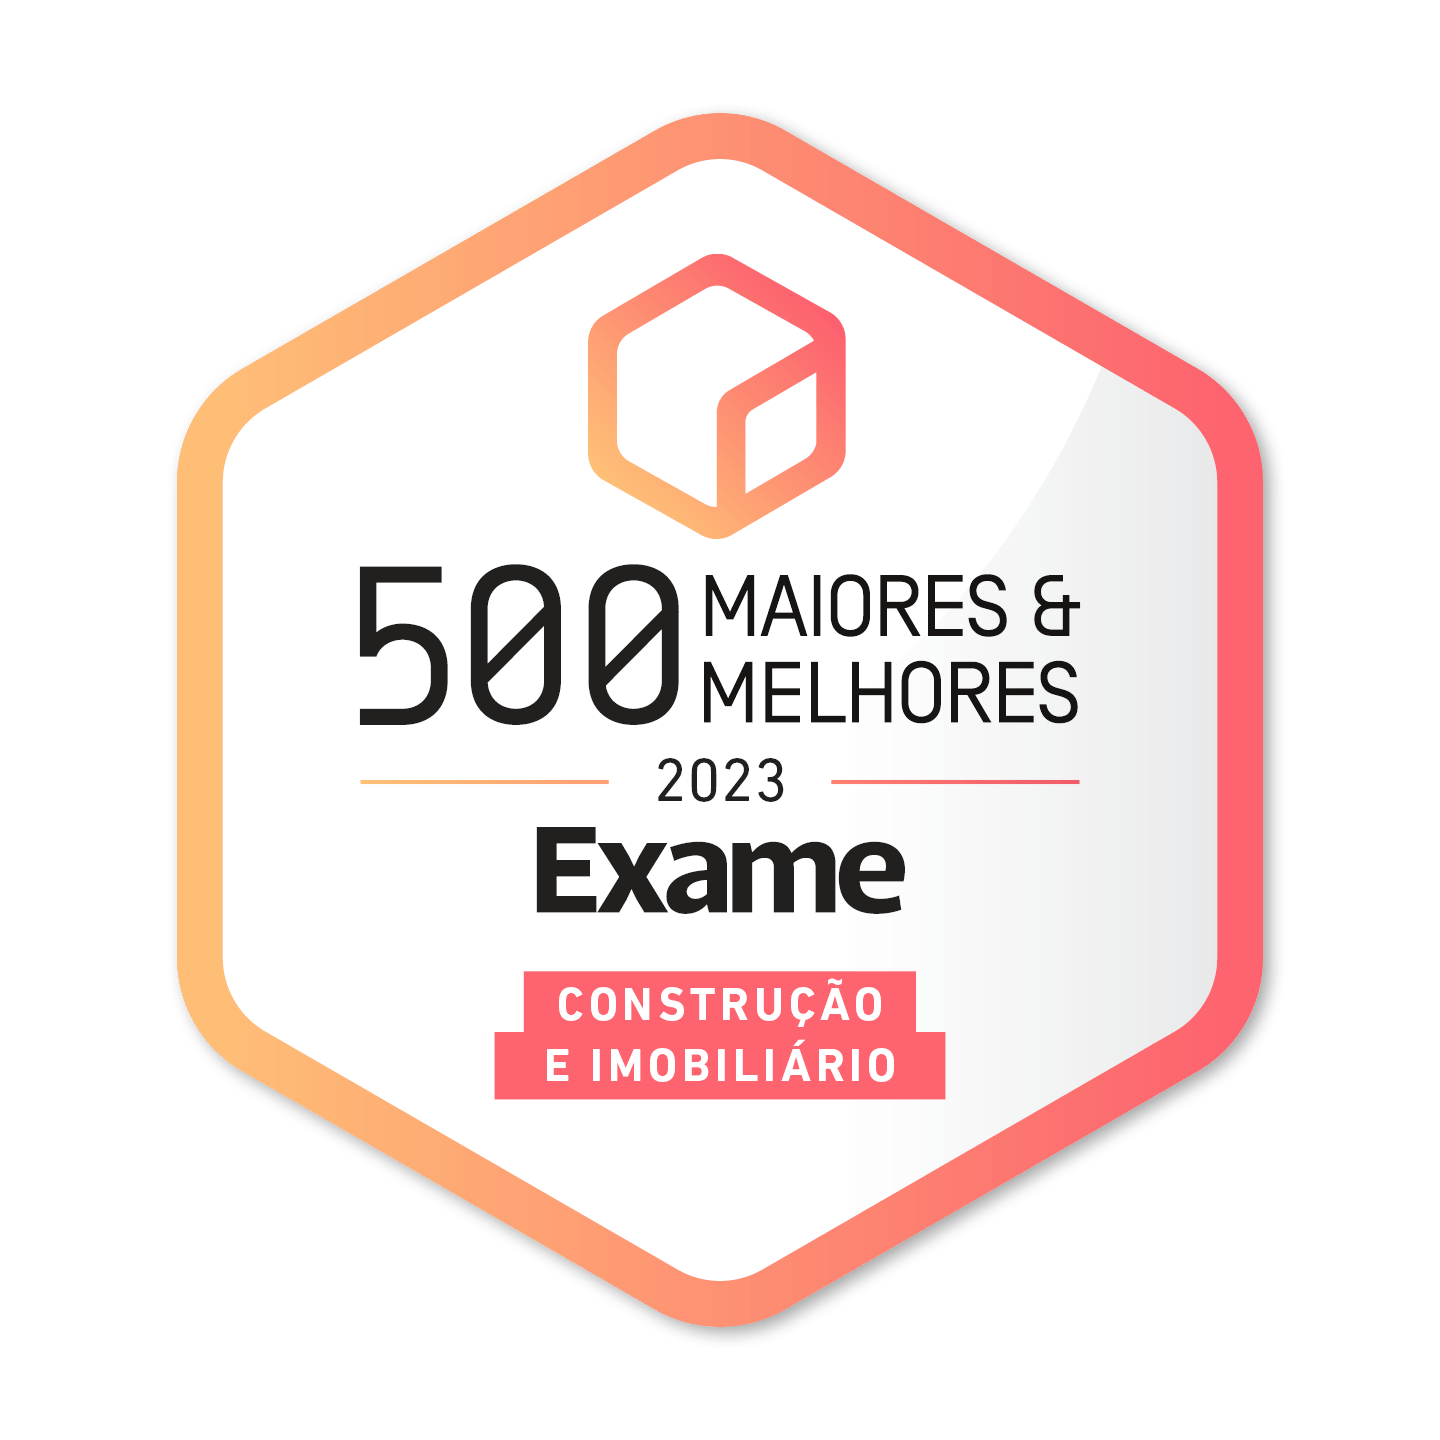 500 Maiores & Melhores empresas portuguesas